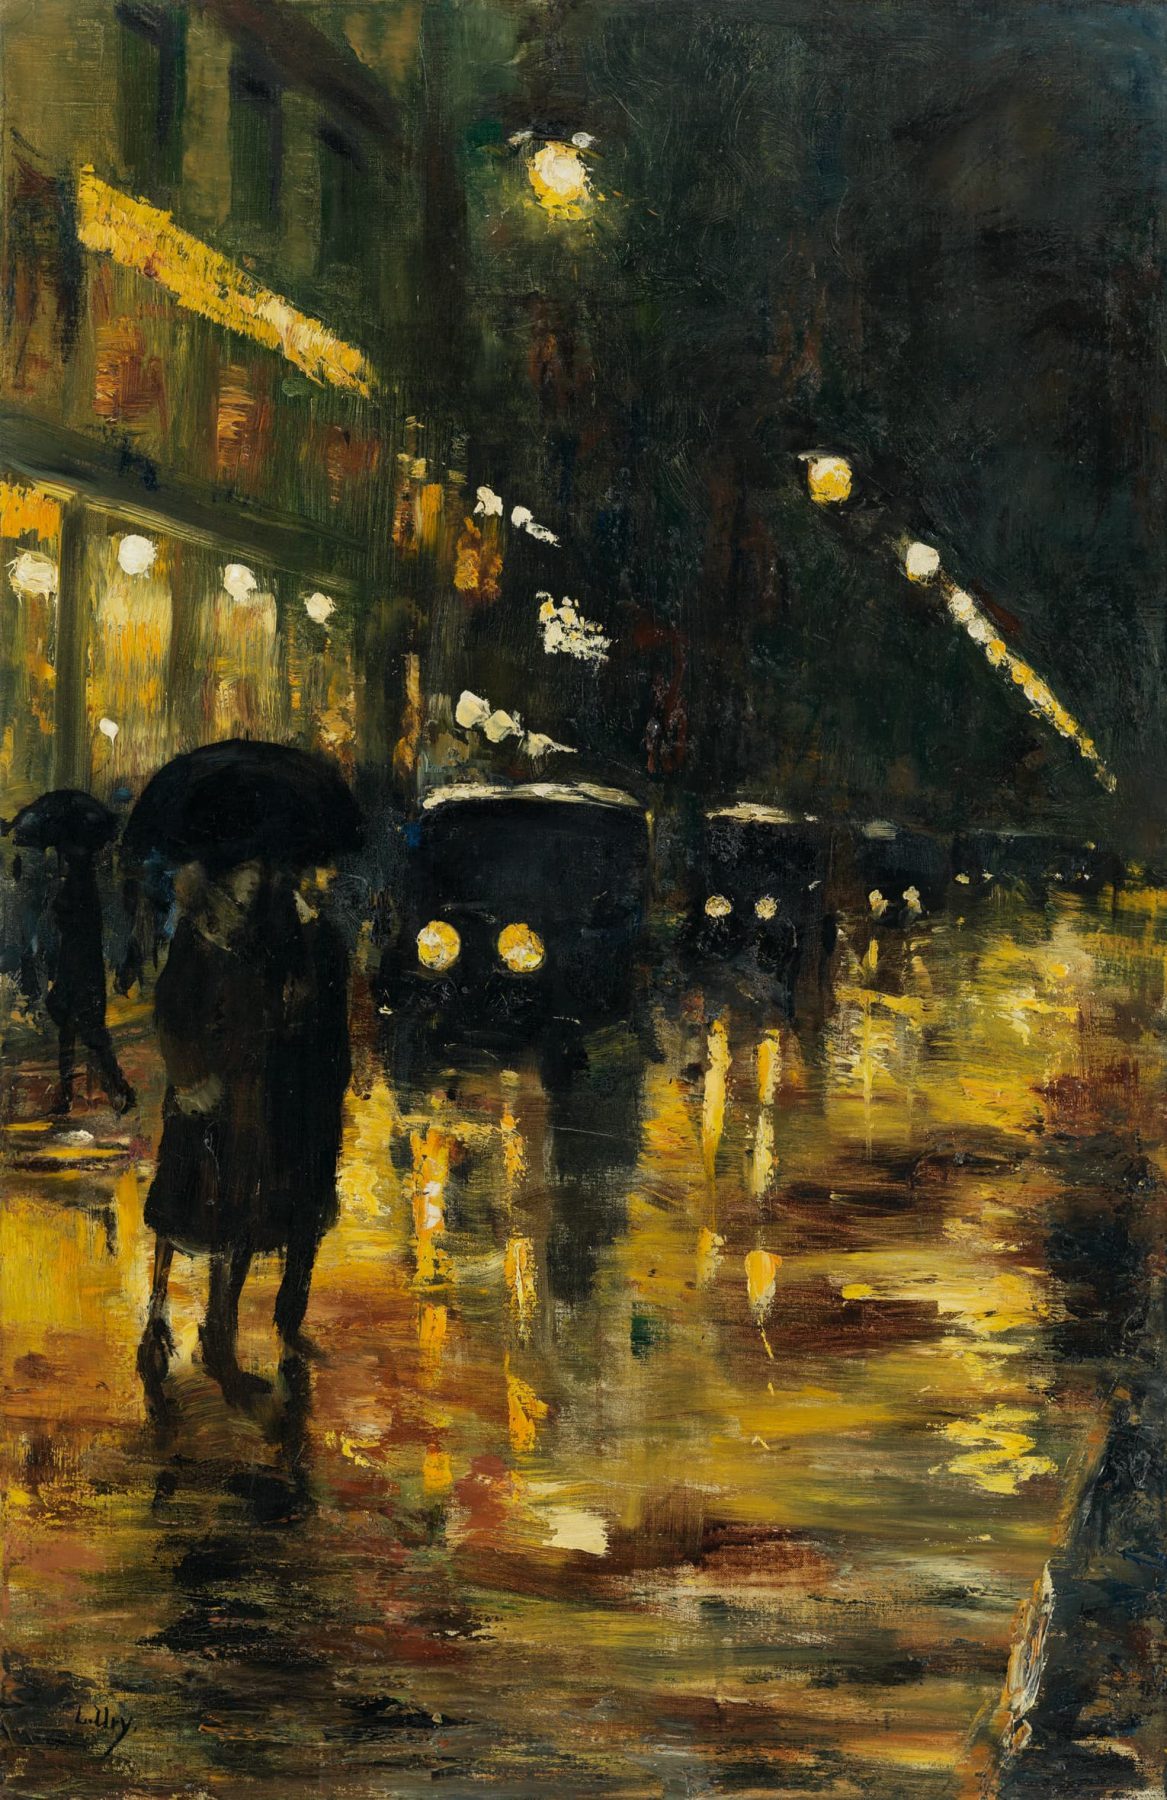 Berlin bei Nacht. Vor einem Café gehen schwarze Gestalten unter einem Regenschirm und im Hintergrund stehen parkende Autos.